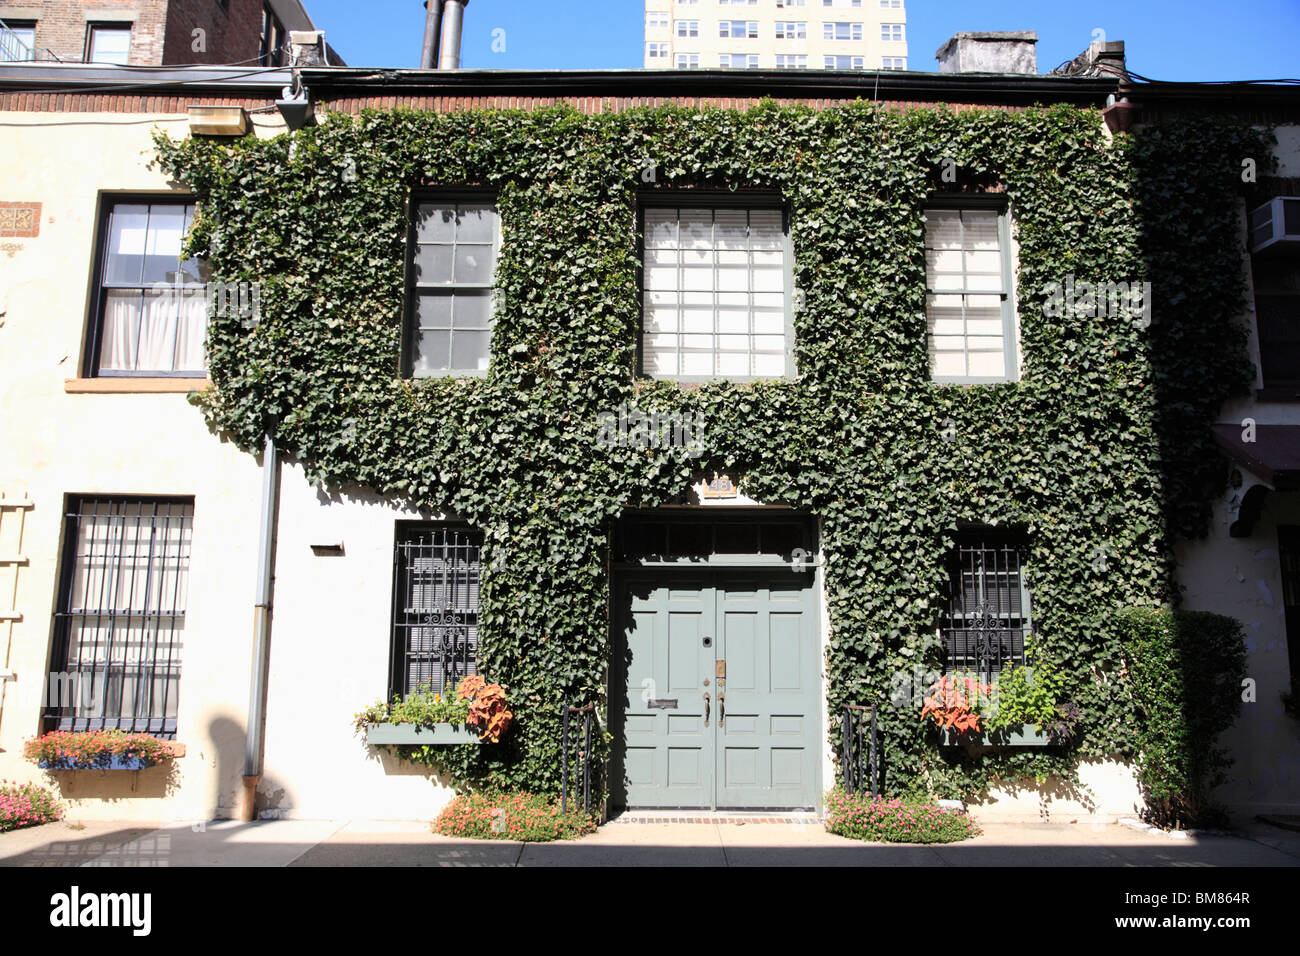 Washington Mews, Greenwich Village, West Village, à Manhattan, New York City, USA Banque D'Images